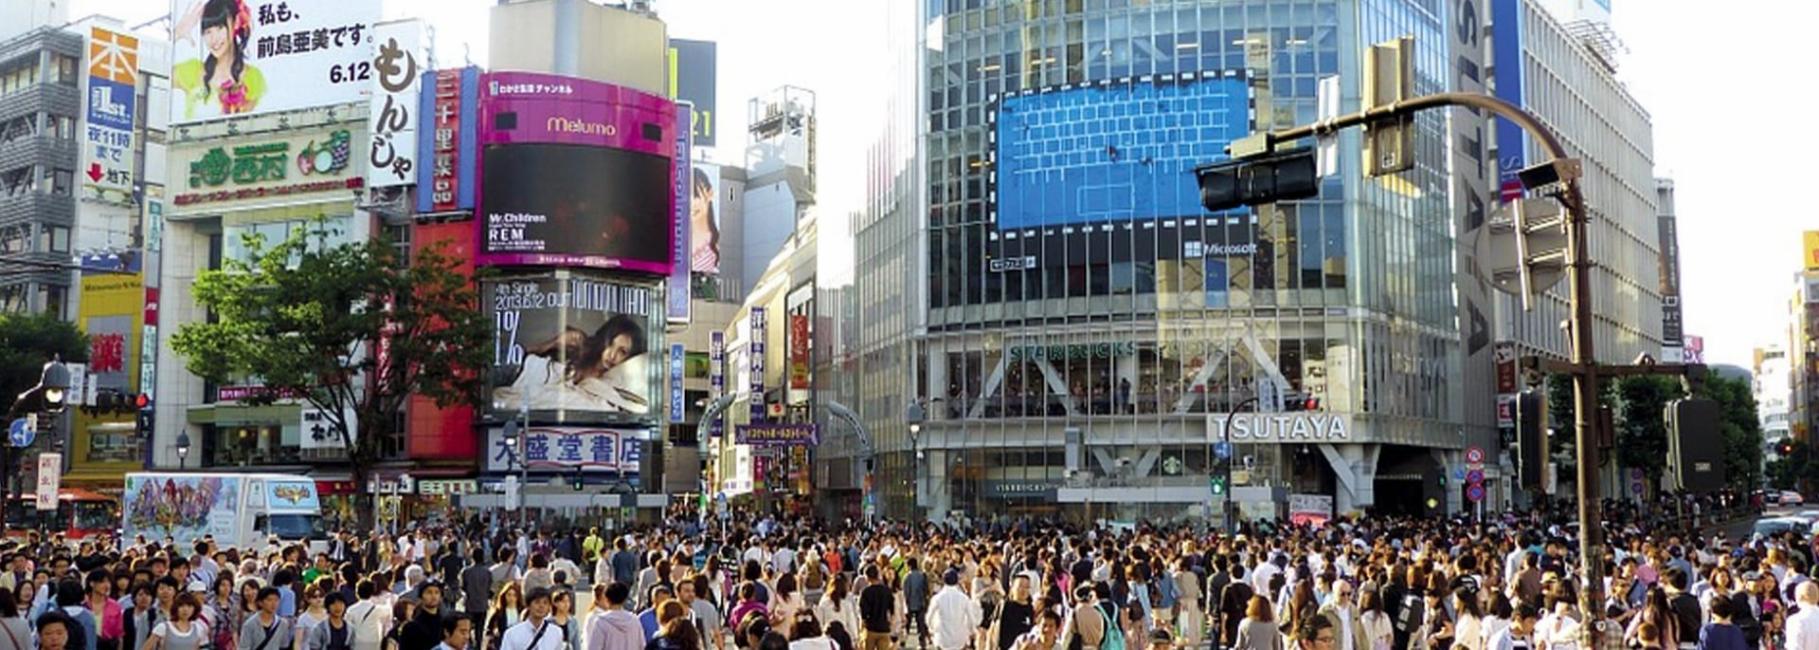 tokyo media trip header slk fe